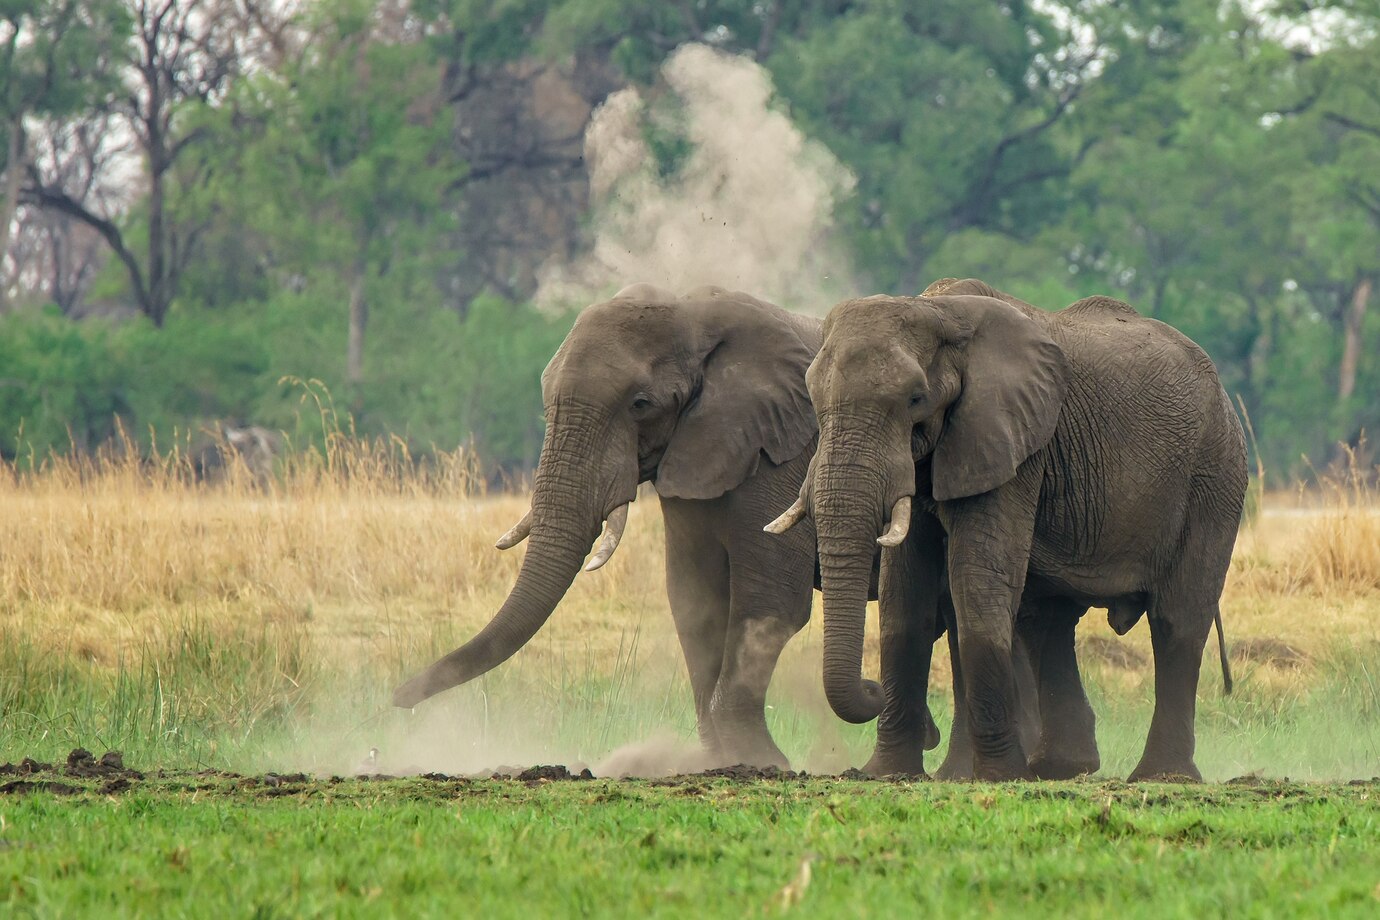 Mơ thấy voi là điềm gì? Khi mơ thấy voi già bạn nên quan tâm đến sức khỏe bố mẹ nhiều hơn